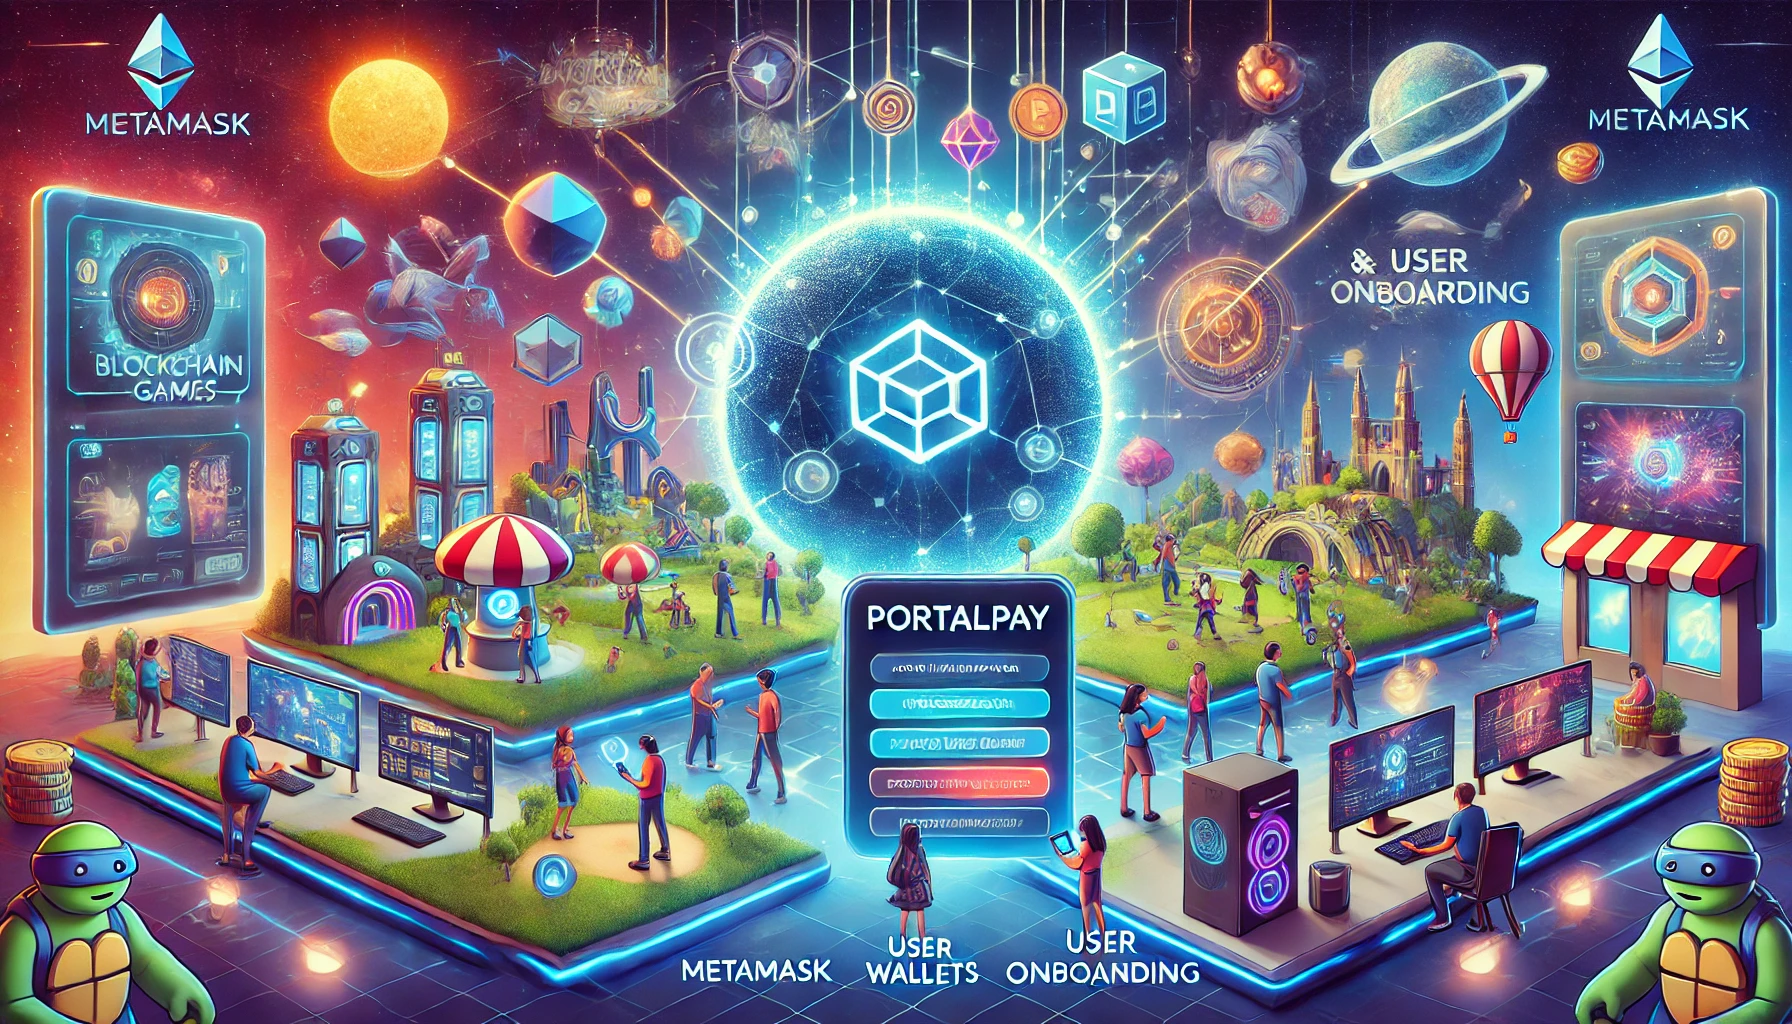 Portal führt PortalPay ein, um Barrieren für Blockchain-Gaming zu senken